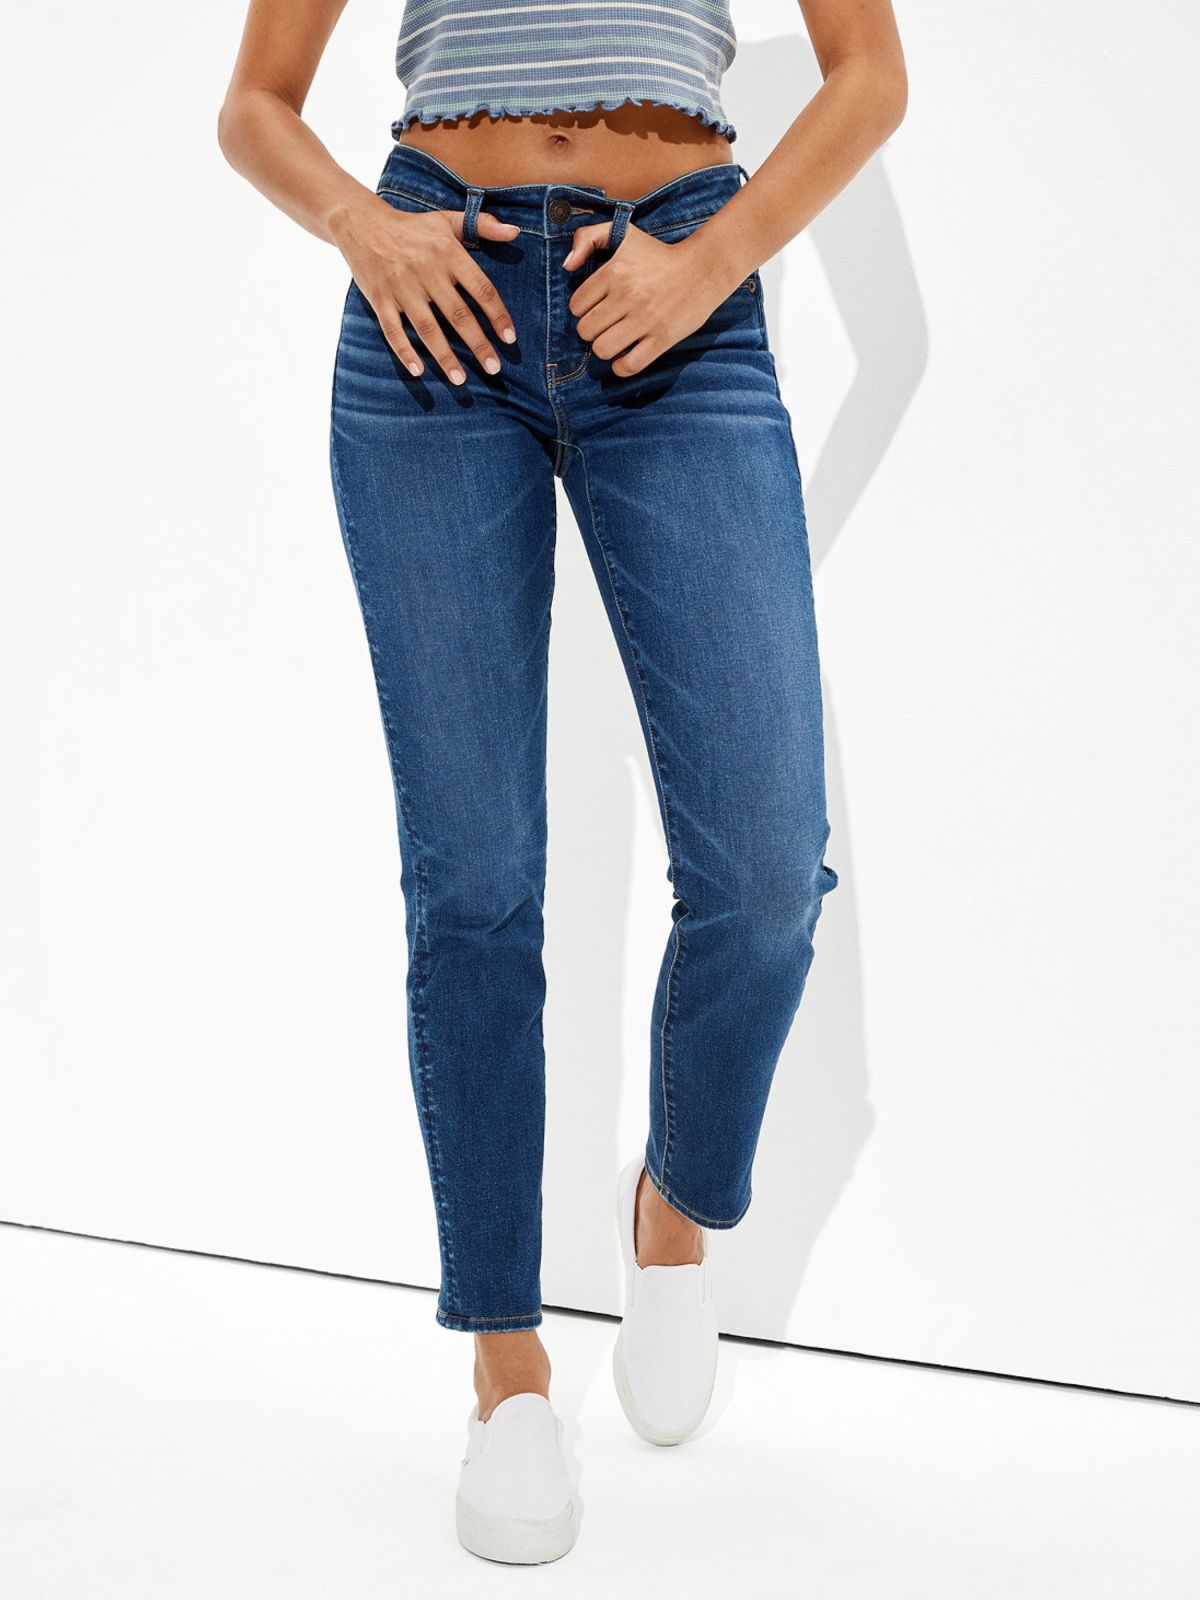  ג'ינס בגזרת SKINNY / נשים של AMERICAN EAGLE